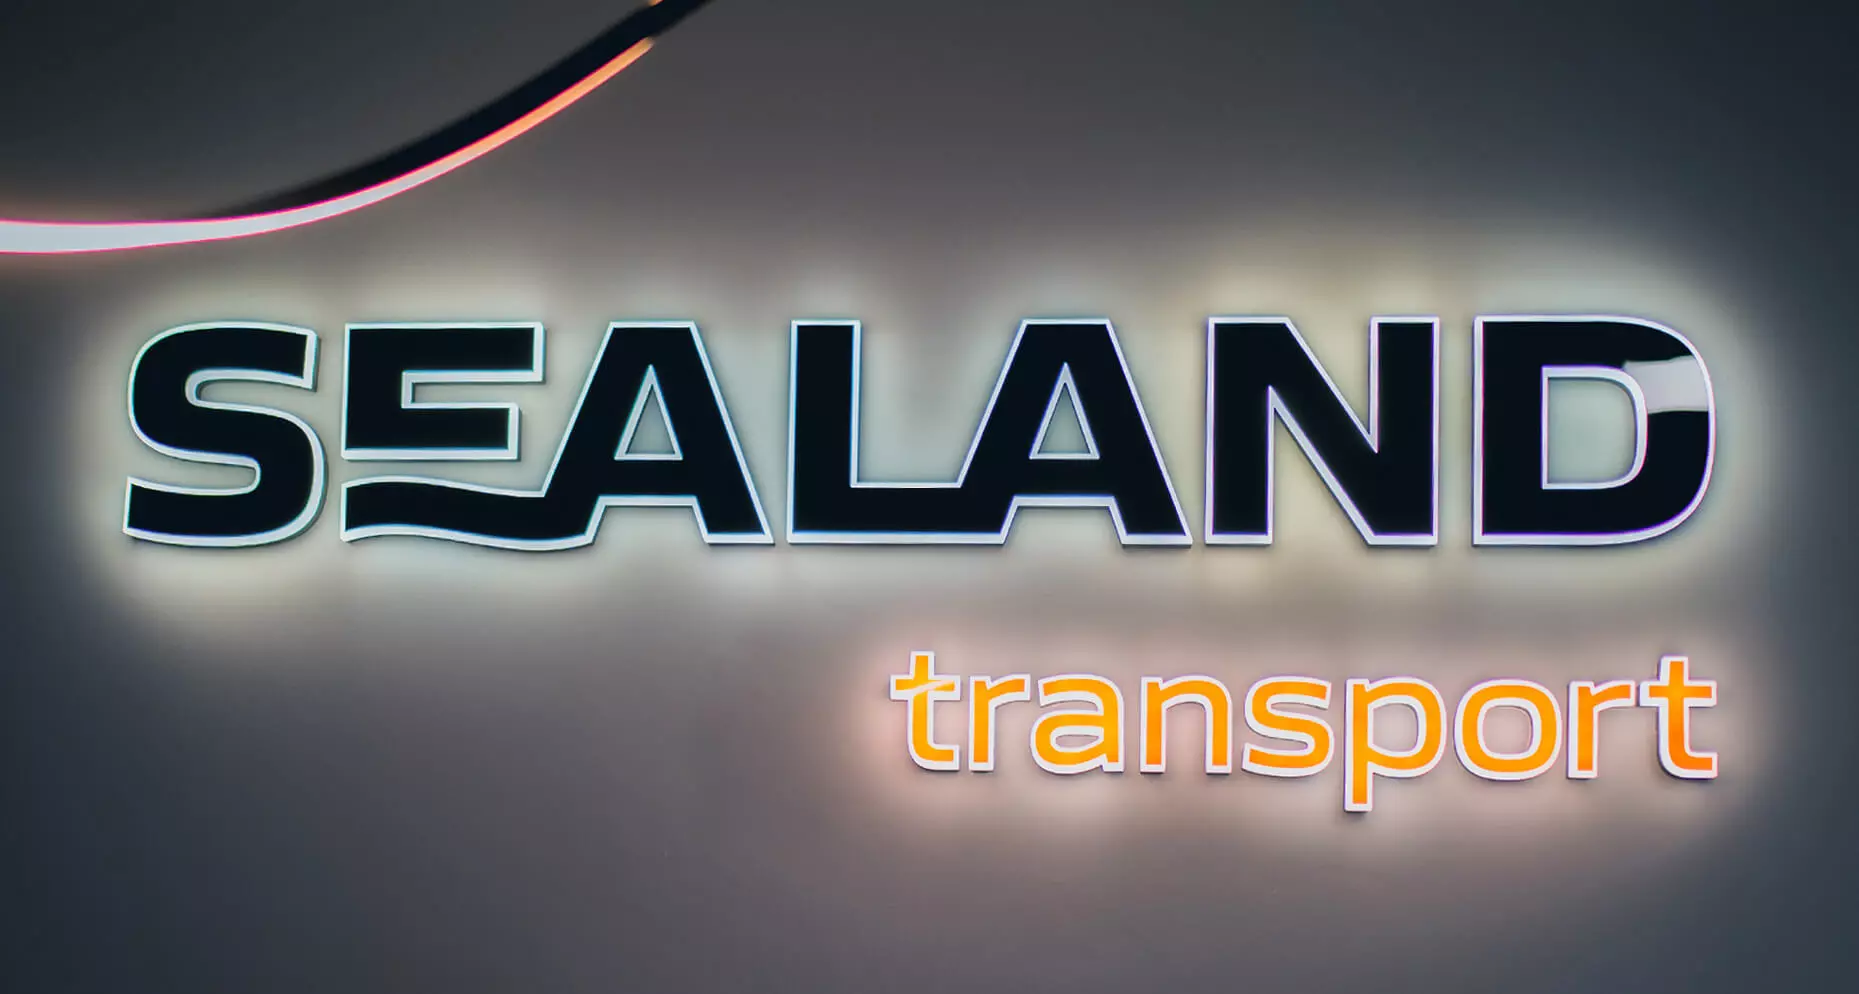 Trasporto in Sealand - Lettere a LED illuminate lateralmente